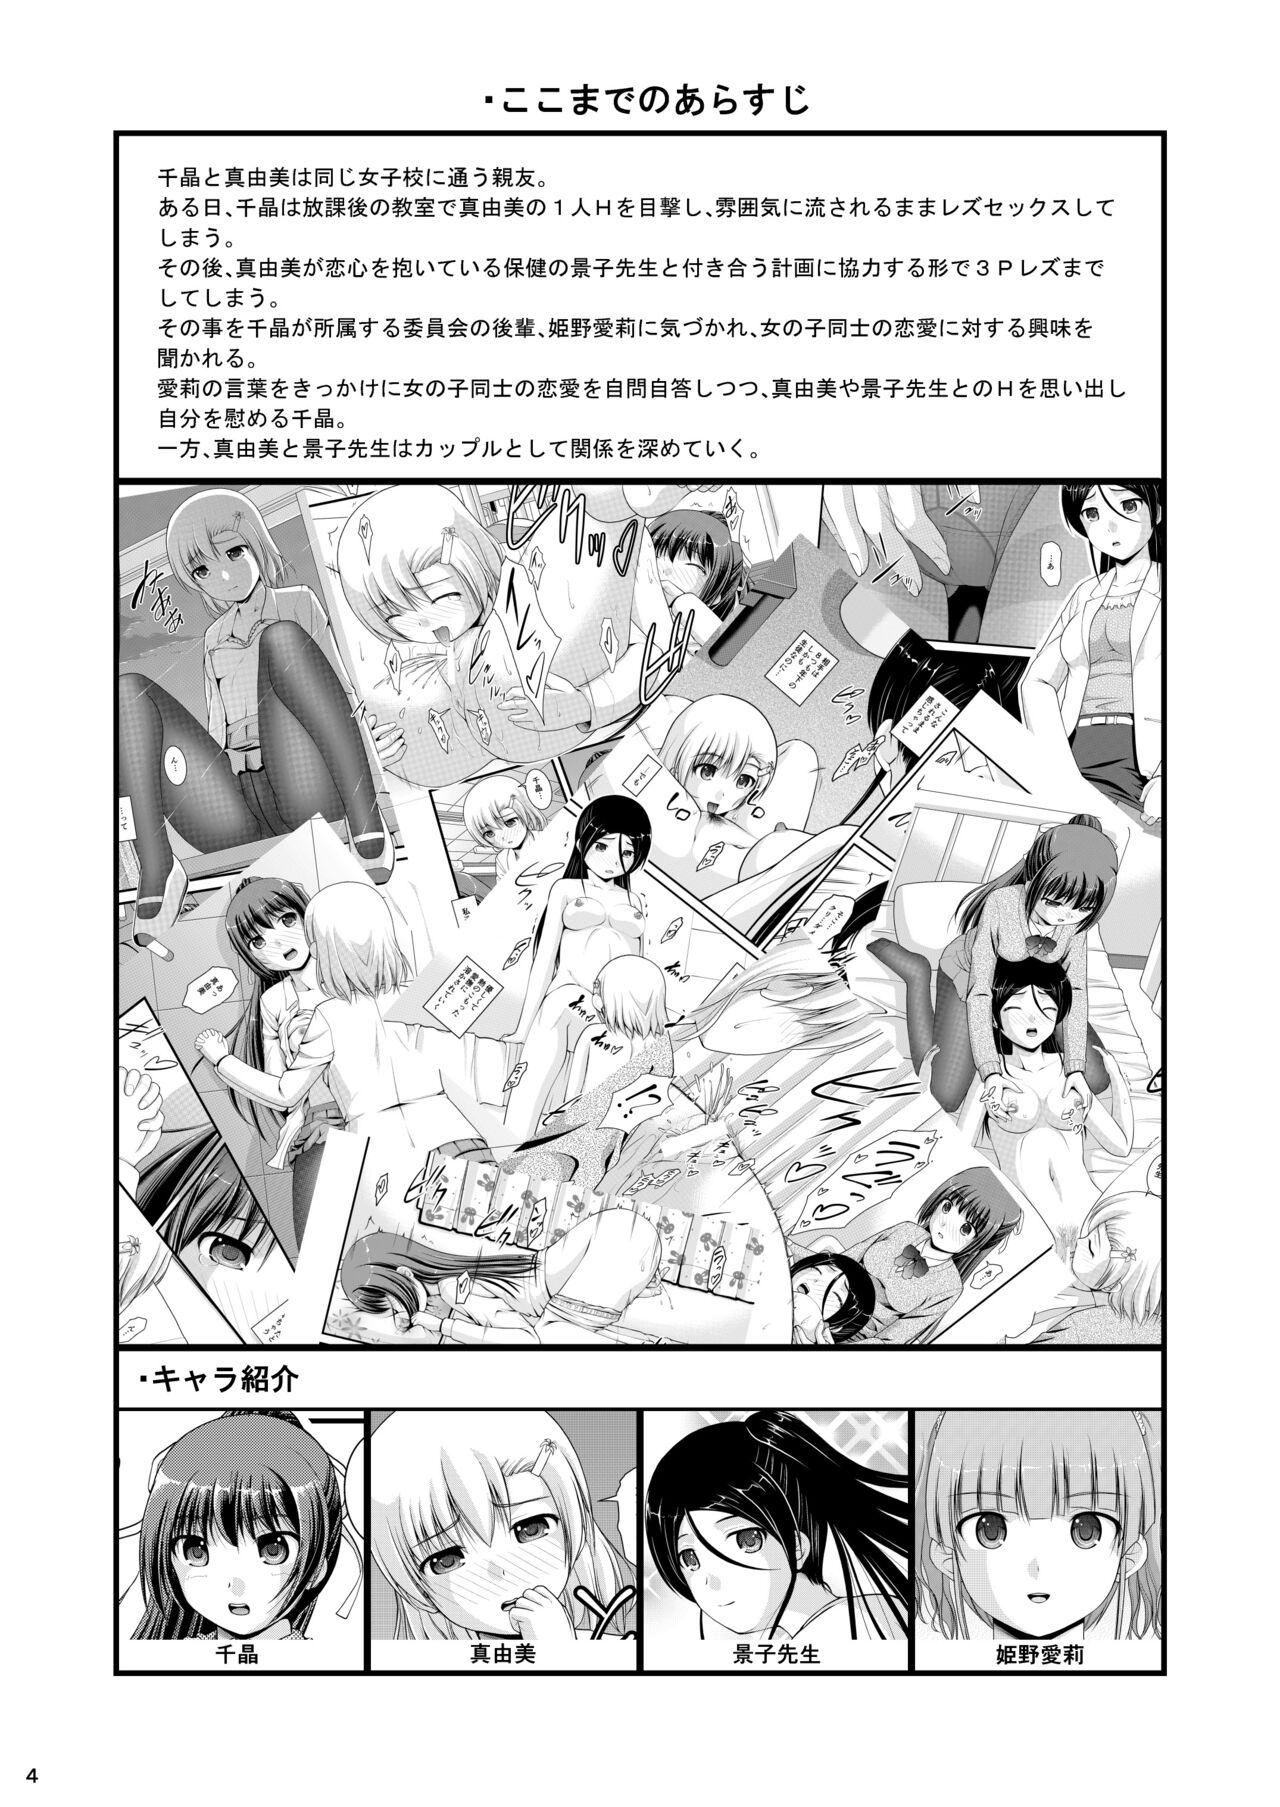 Blowjob Yurikko wa Houkago ni Yurameki Hanasaku 4 - Original Slim - Page 4